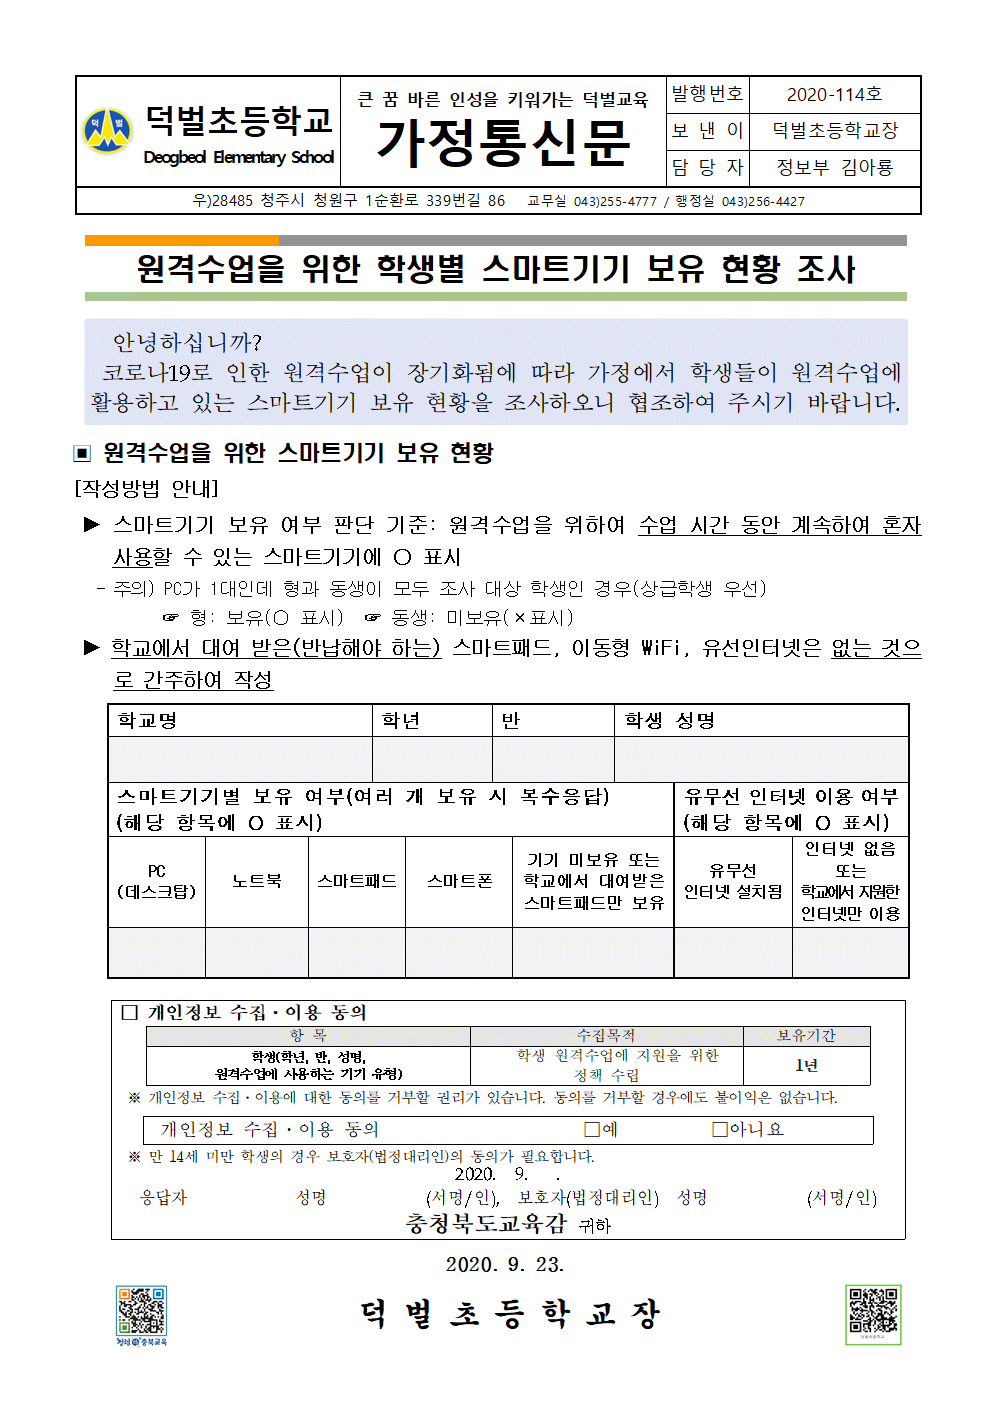 2020. 원격수업을 위한 학생별 스마트기기 보유 현황 조사 가정통신문001